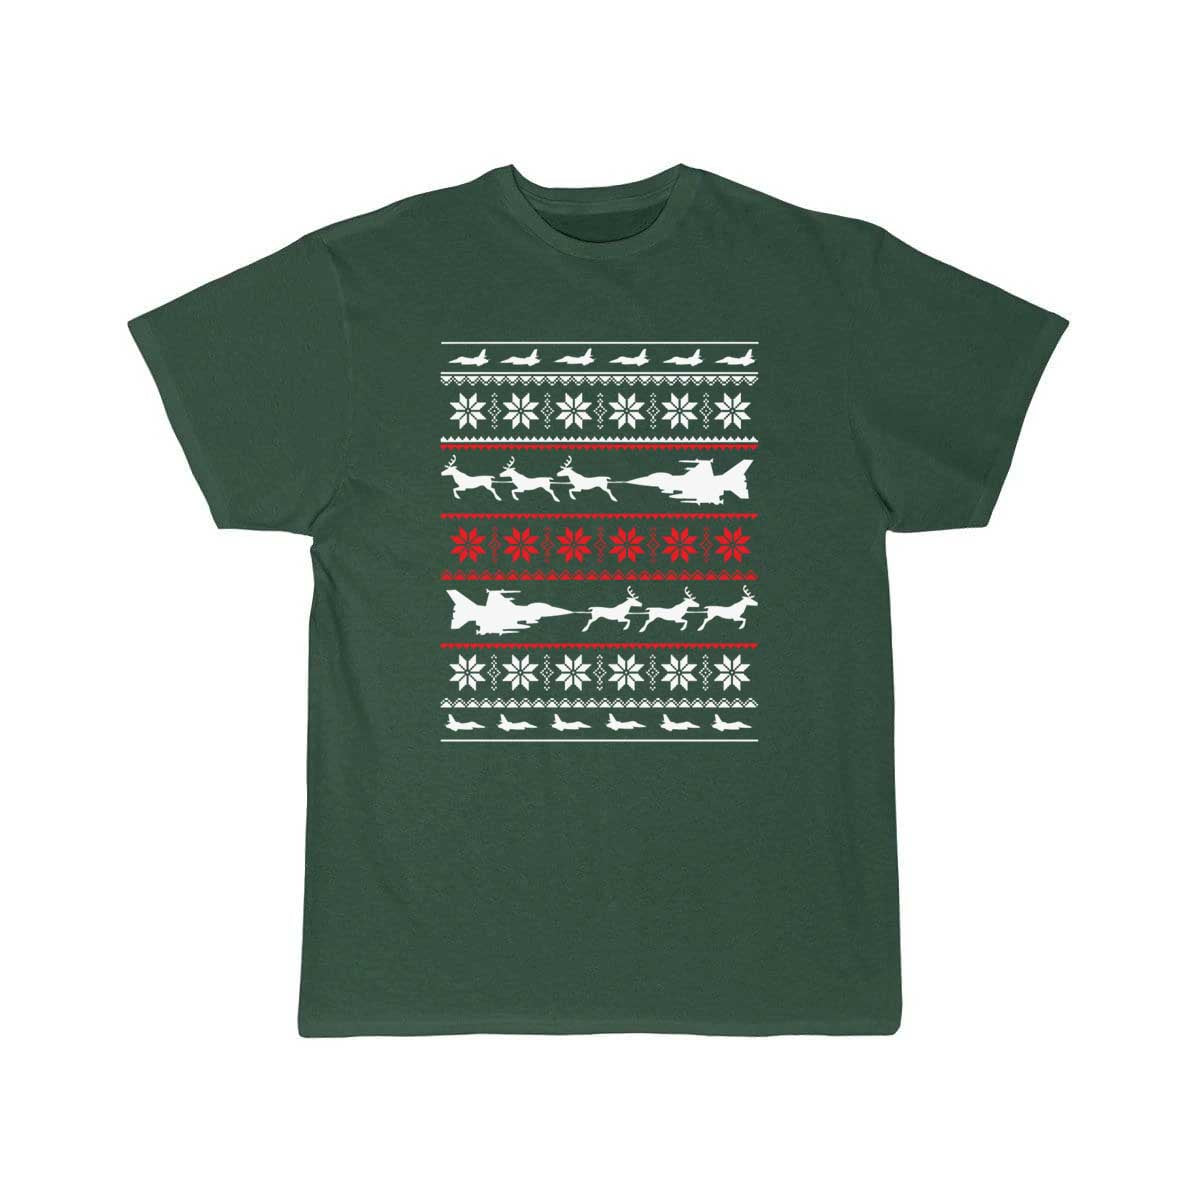 Christmas sweater for fighter jet lover T SHIRT THE AV8R